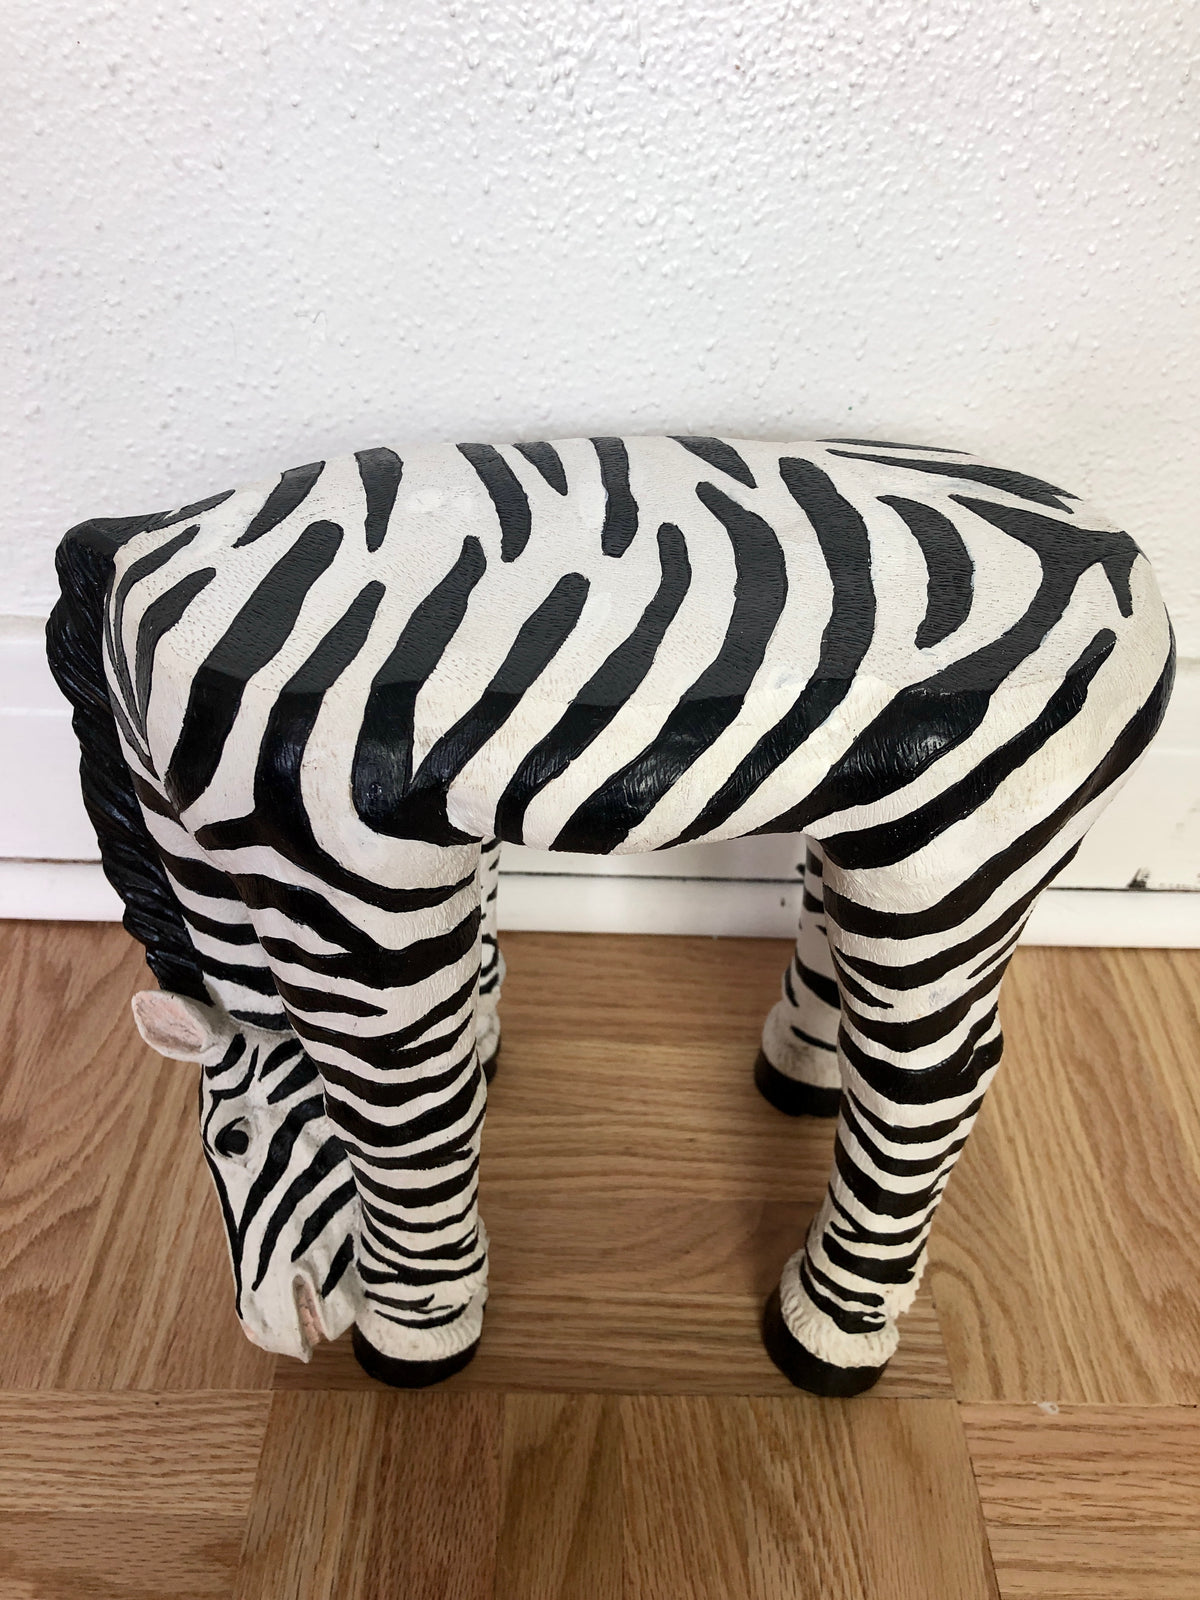 Zebra Plant Stand / Shelf